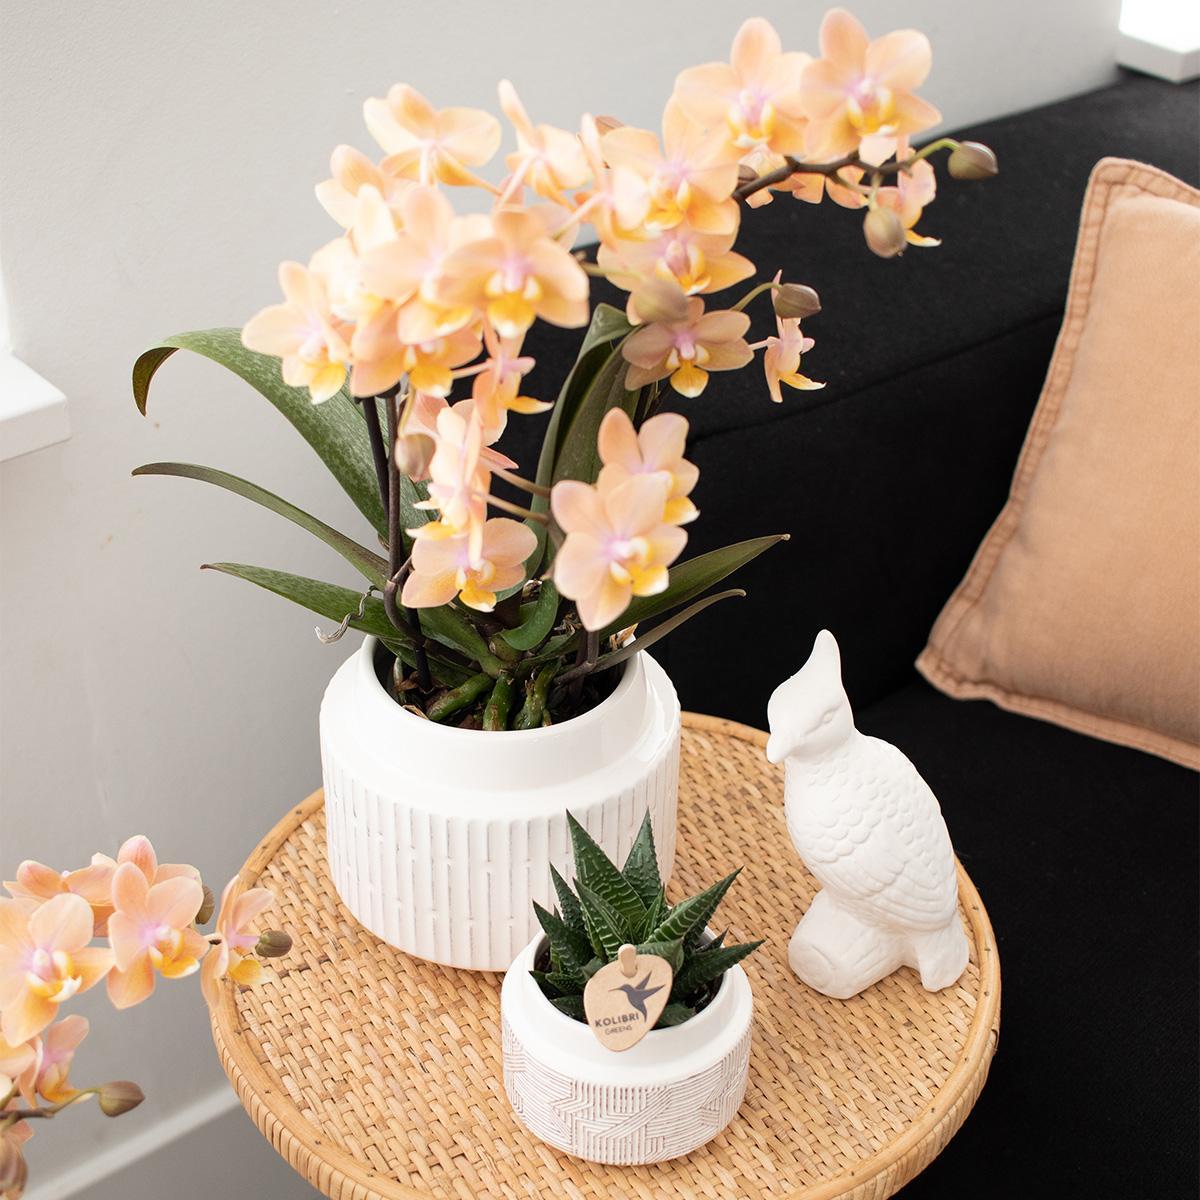 Verrassingsmix voor planten - voordelige plantenbox met 4 diverse orchideeën rechtstreeks van de kweker.